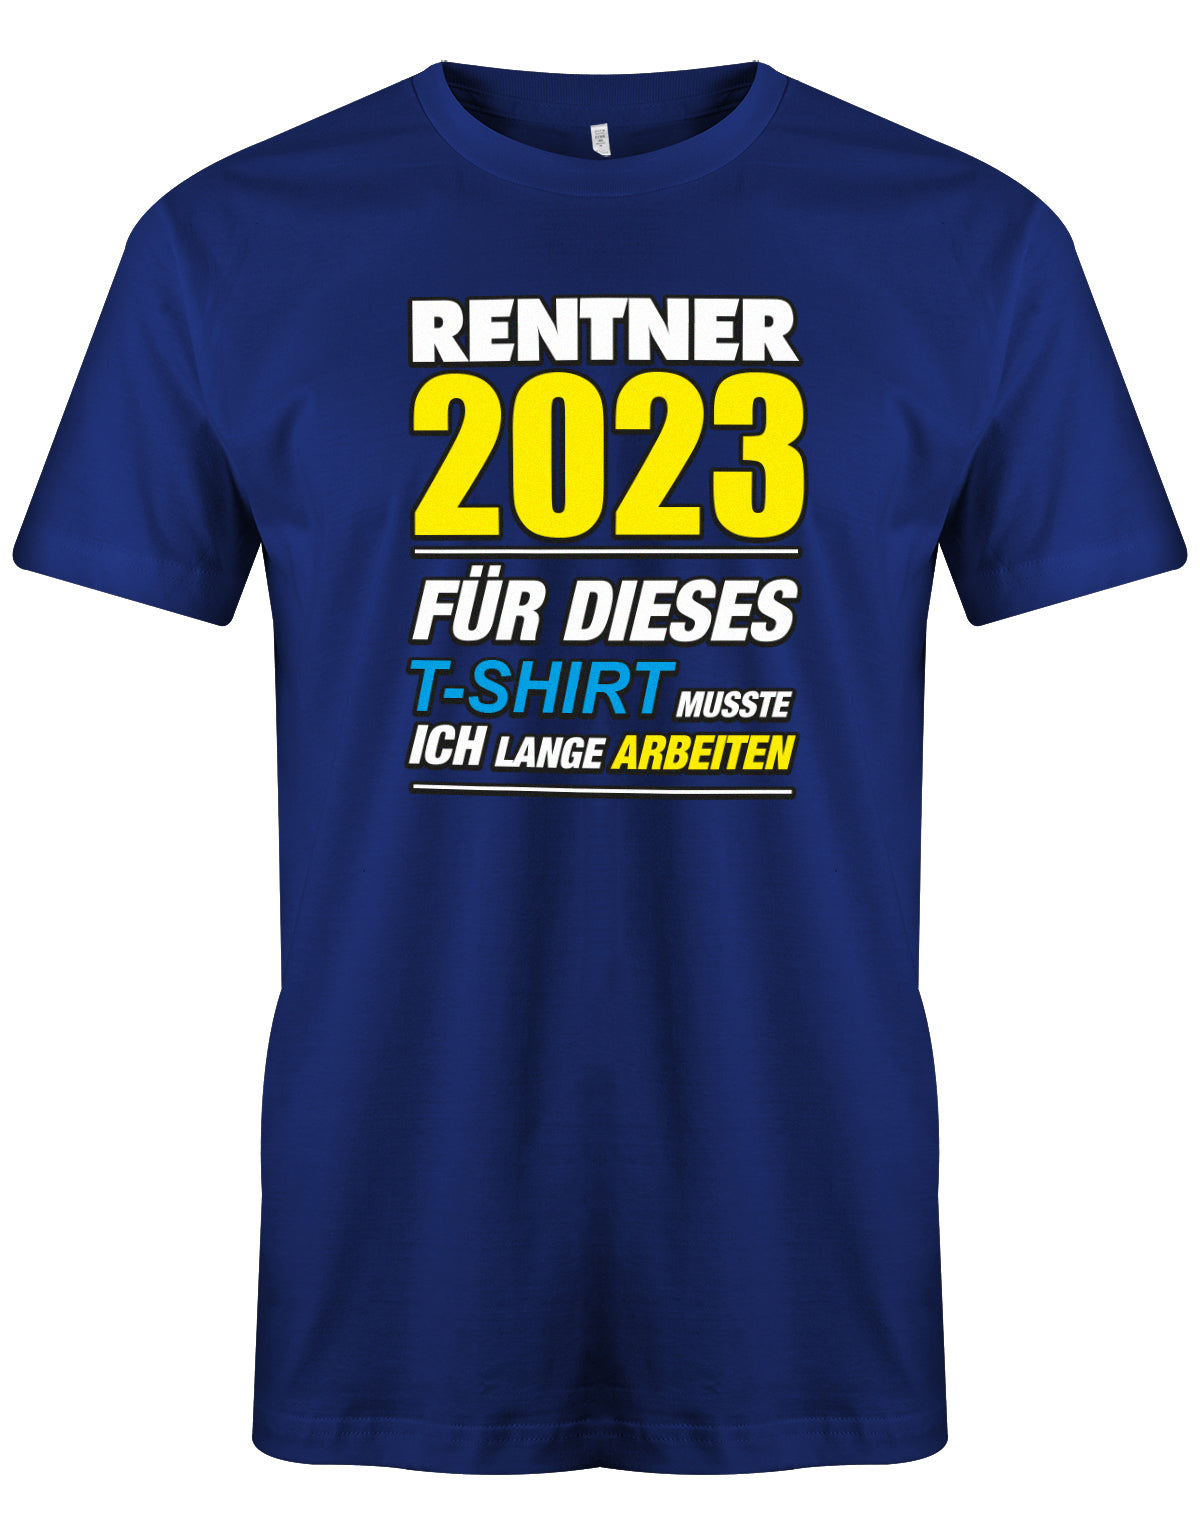 Rentner 2023 für dieses T-Shirt musste ich lange arbeiten - Männer T-Shirt Royalblau